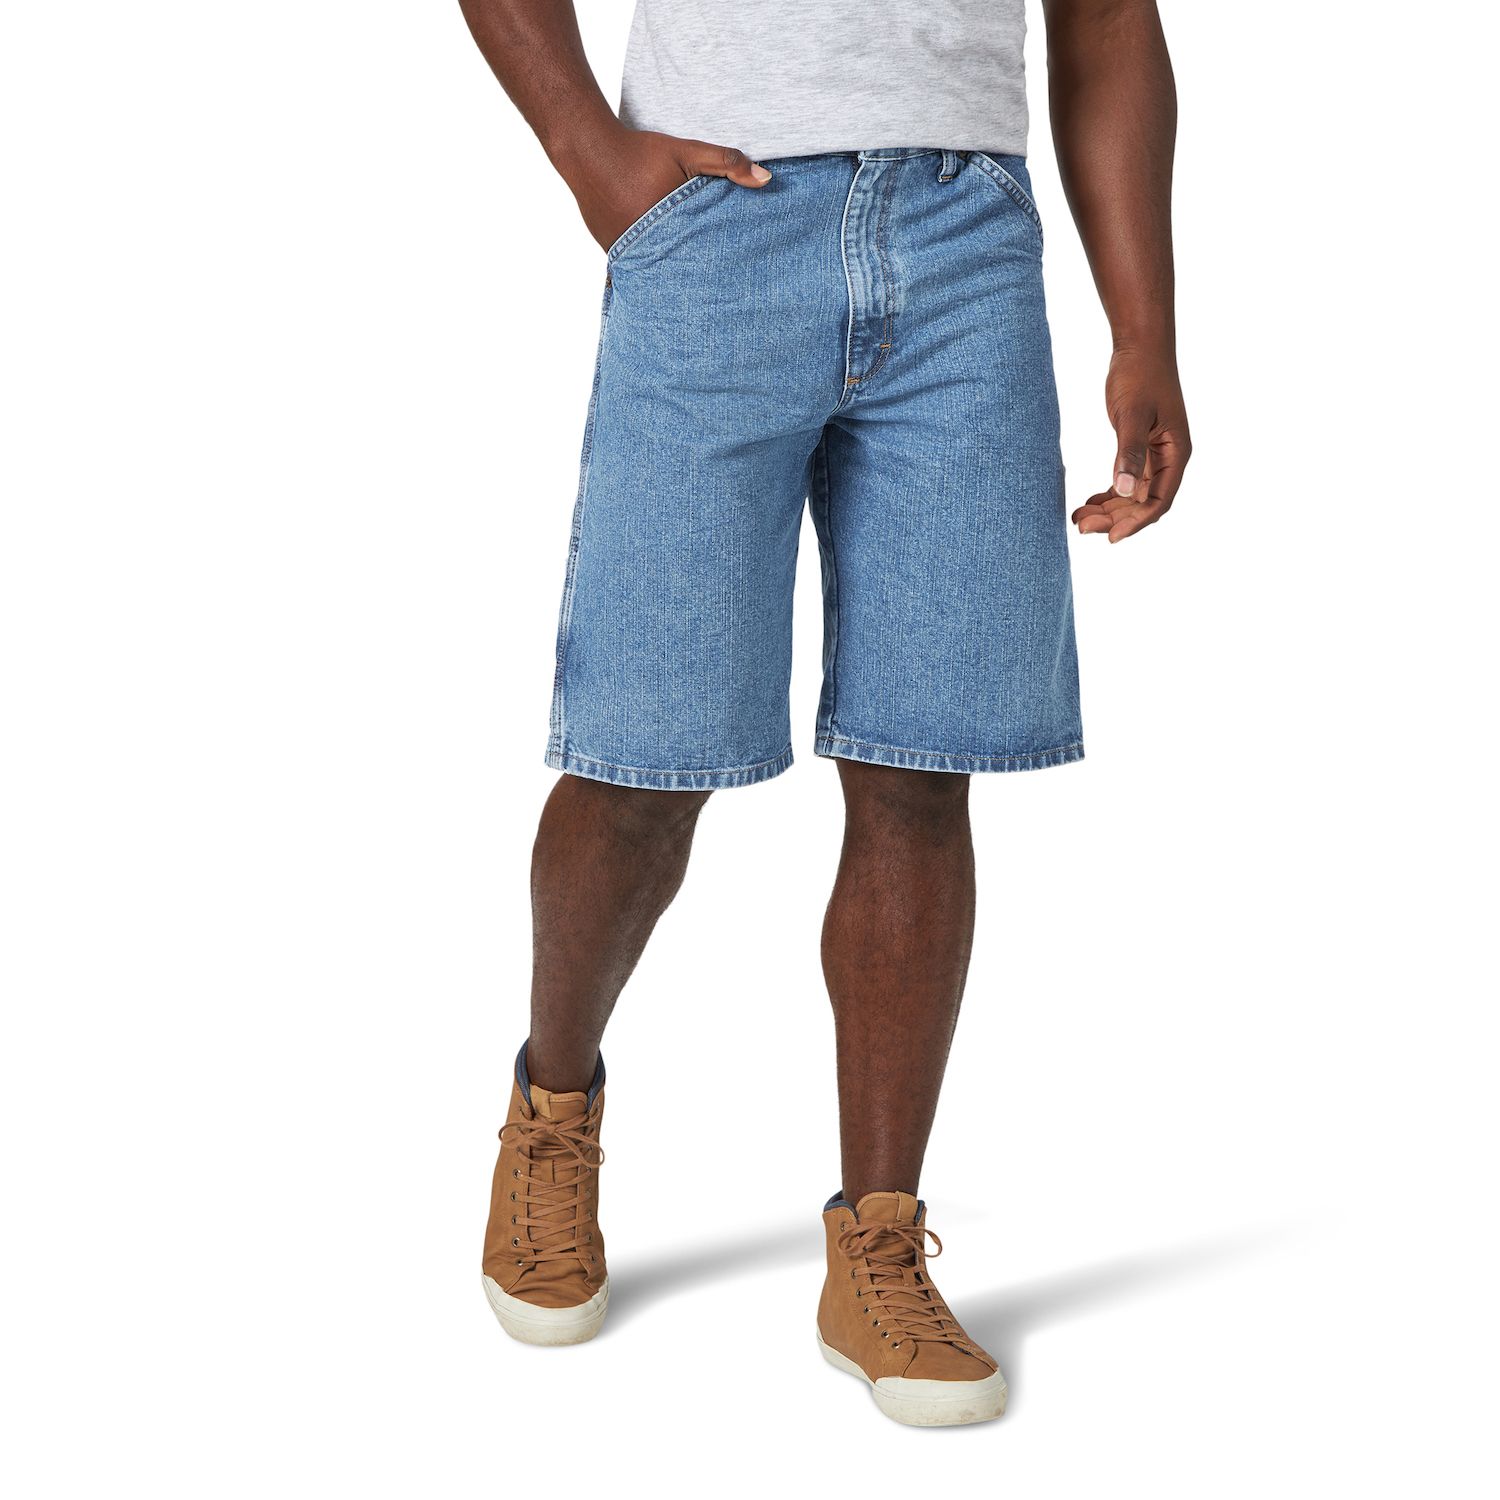 wrangler jeans shorts mens